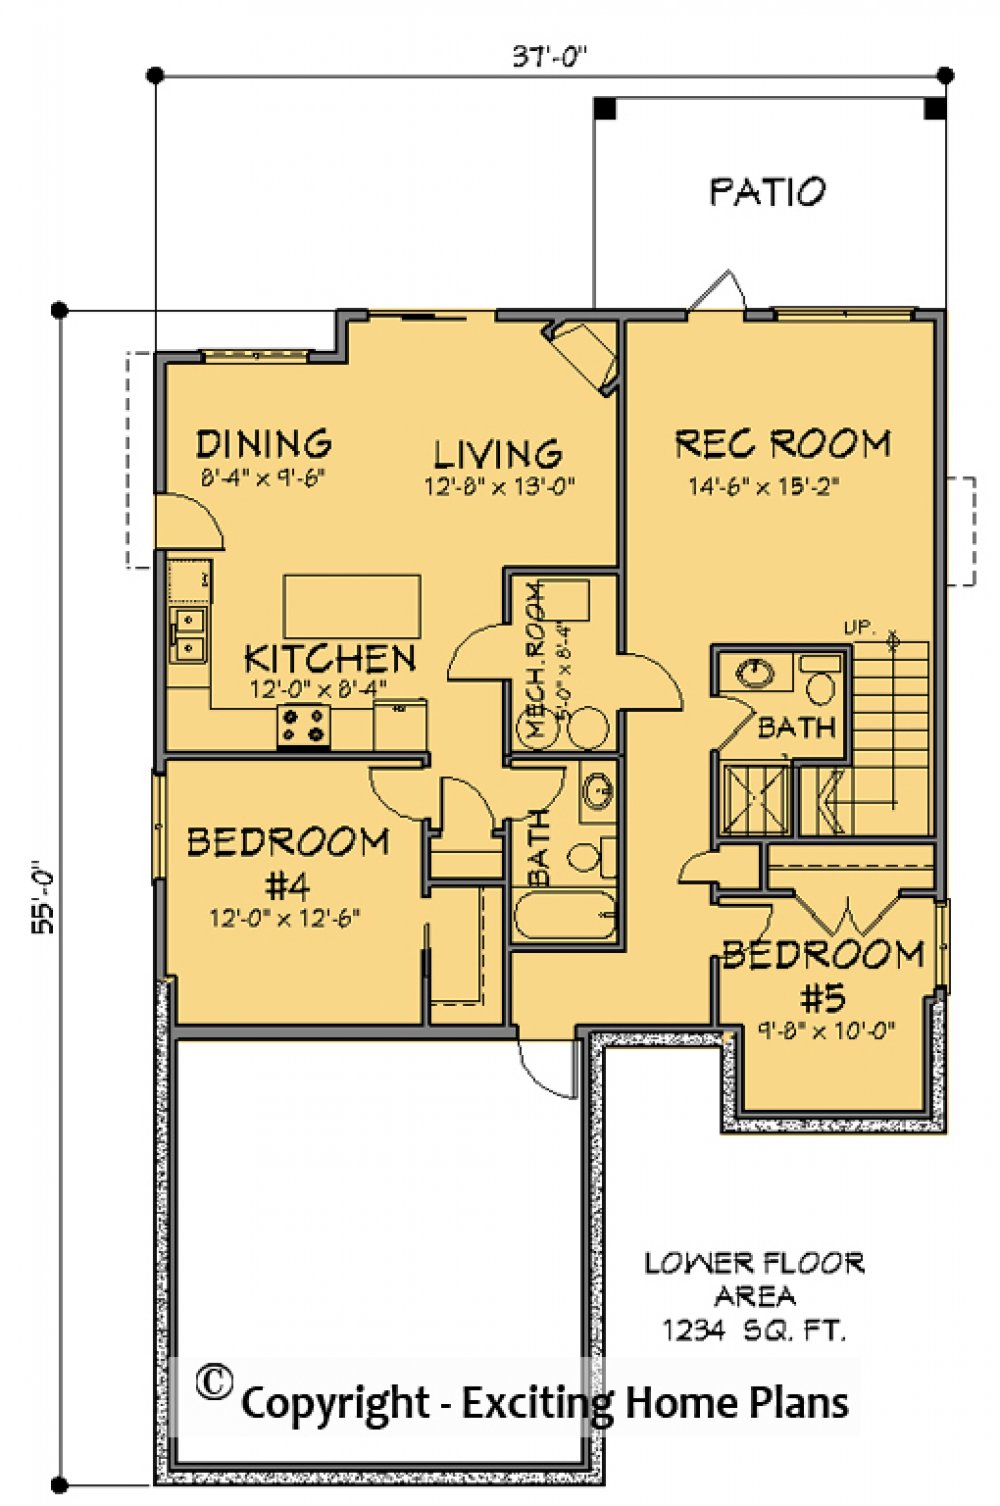 House Plan E1577-10  Lower Floor Plan